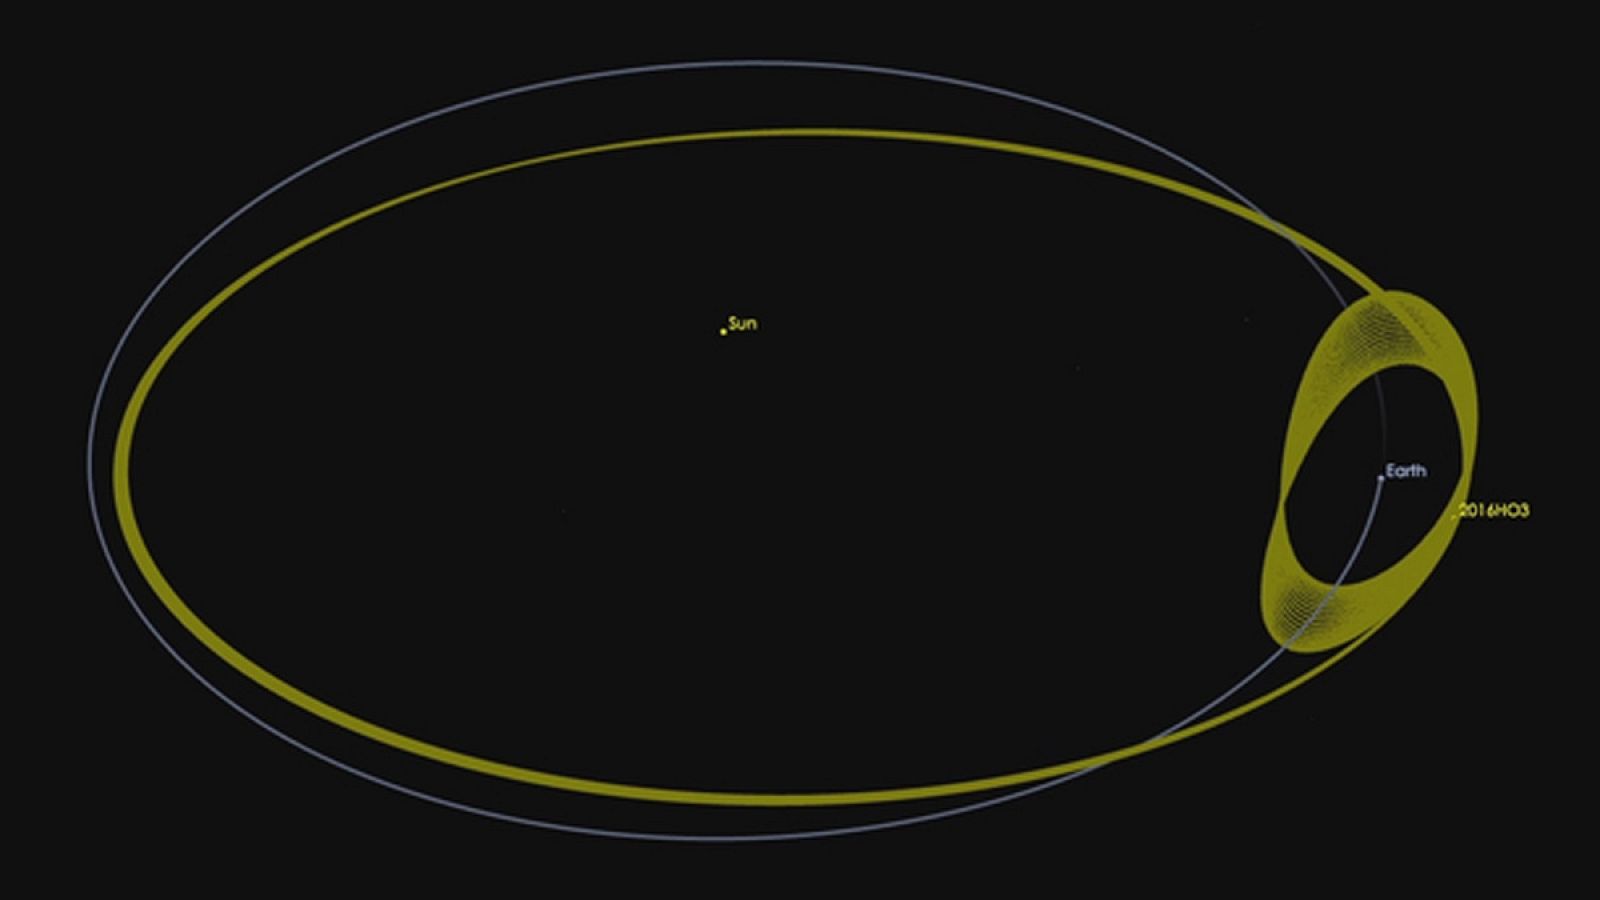 El pequeño cuerpo 2016 HO3 es un asteroide que viaja con la Tierra alrededor del Sol